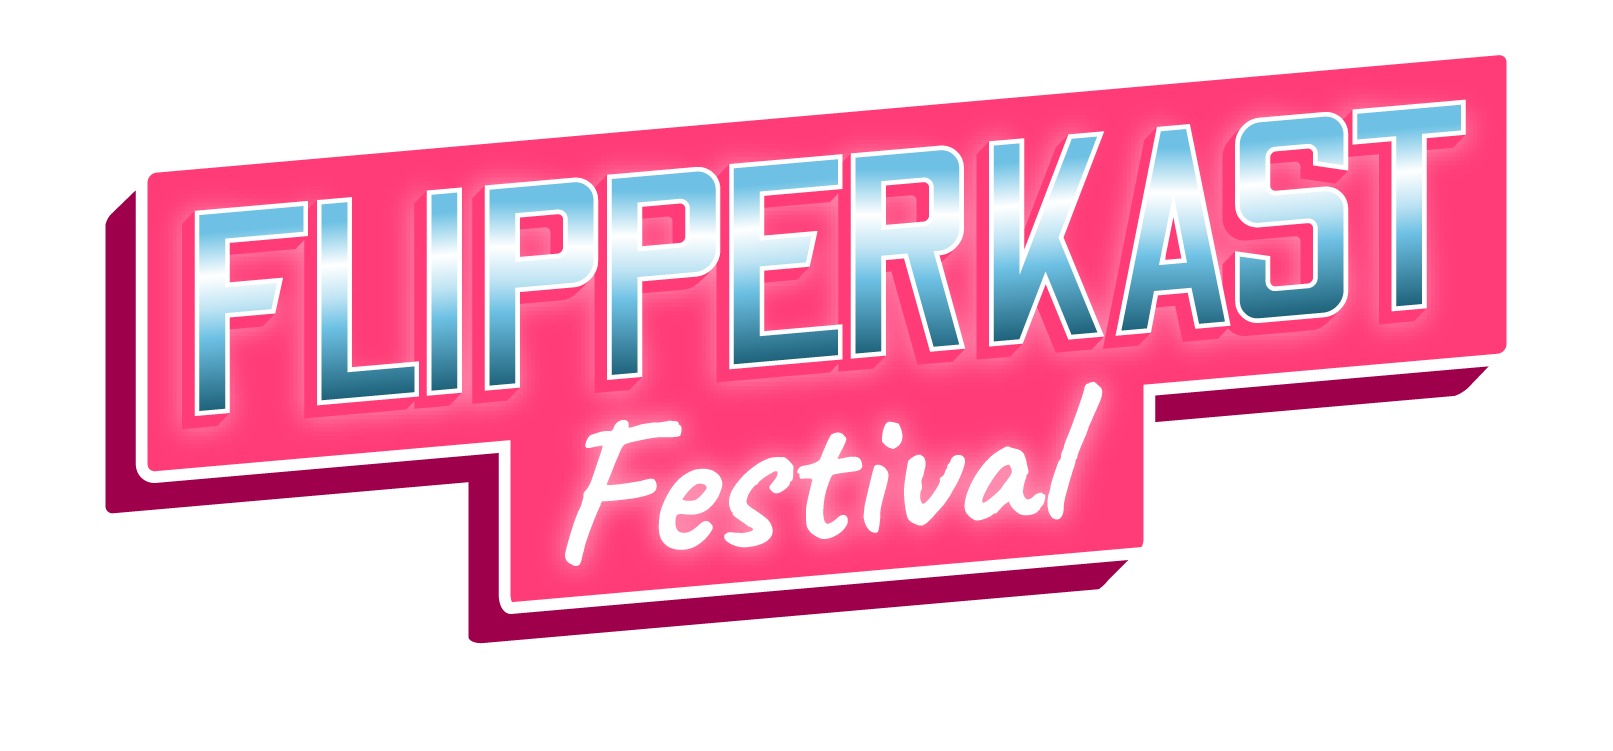 flipperkast festival tickets info